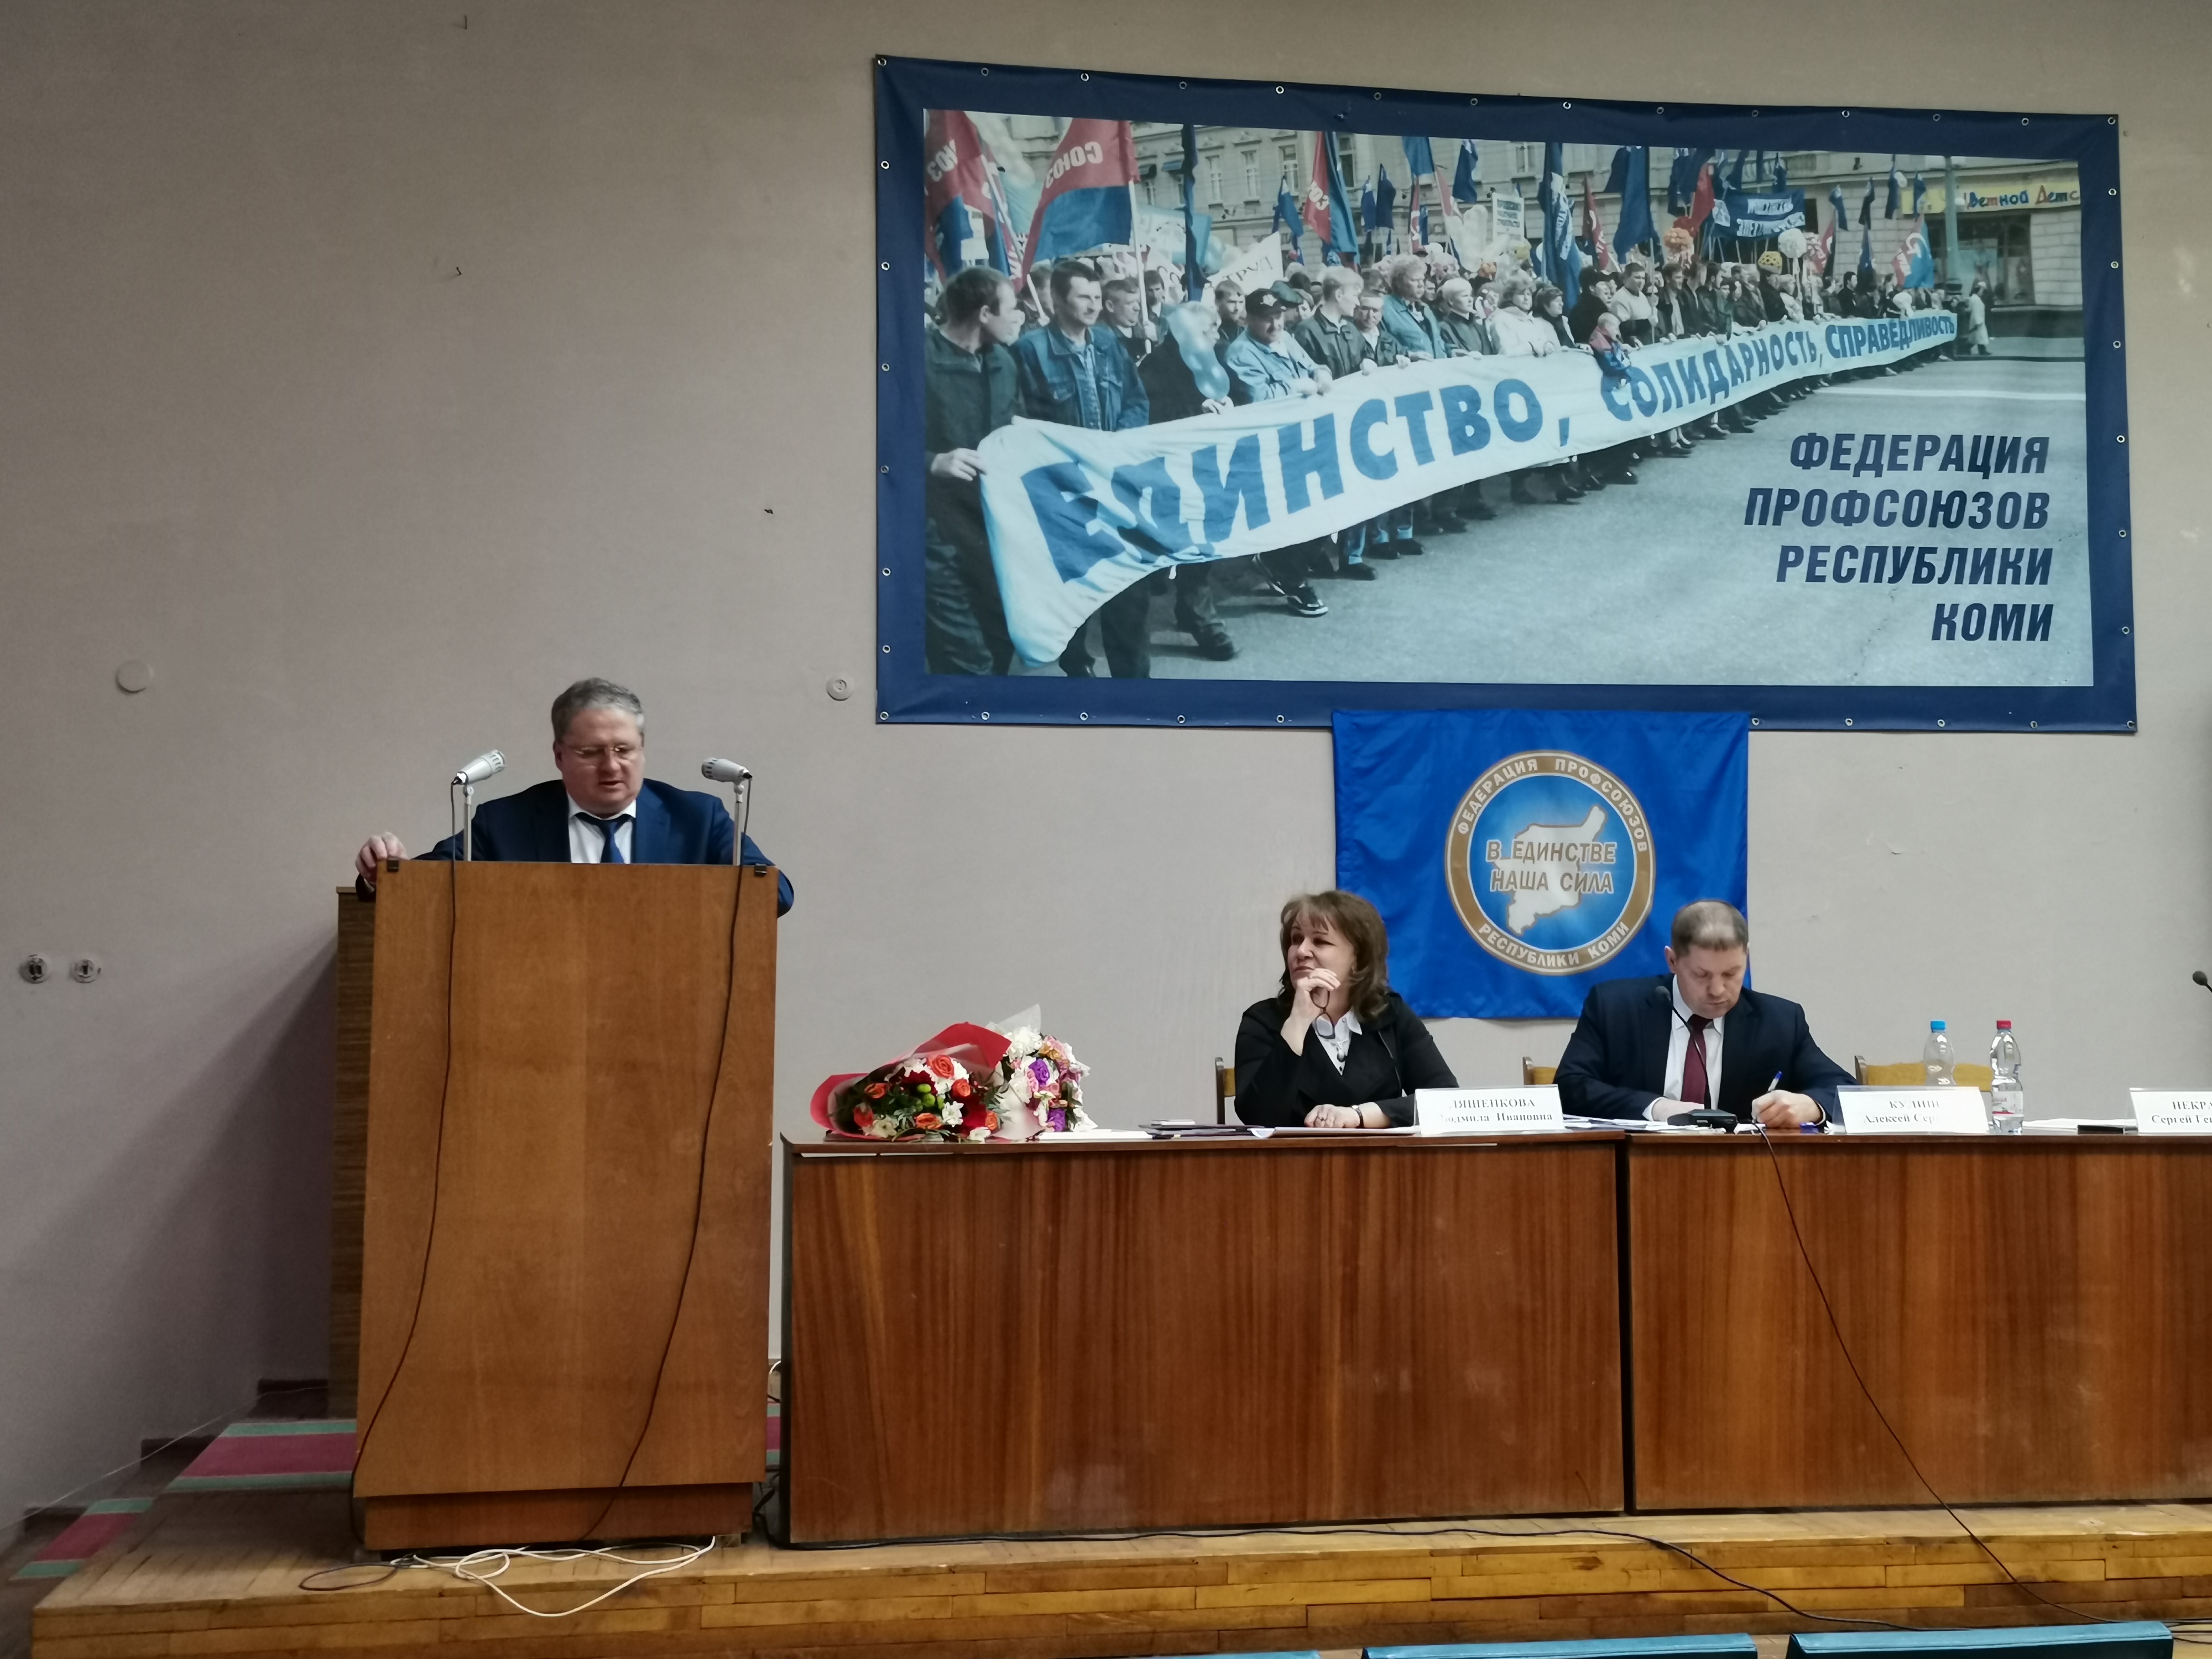 Отчетно-выборная конференция Федерации профсоюзов Республики Коми